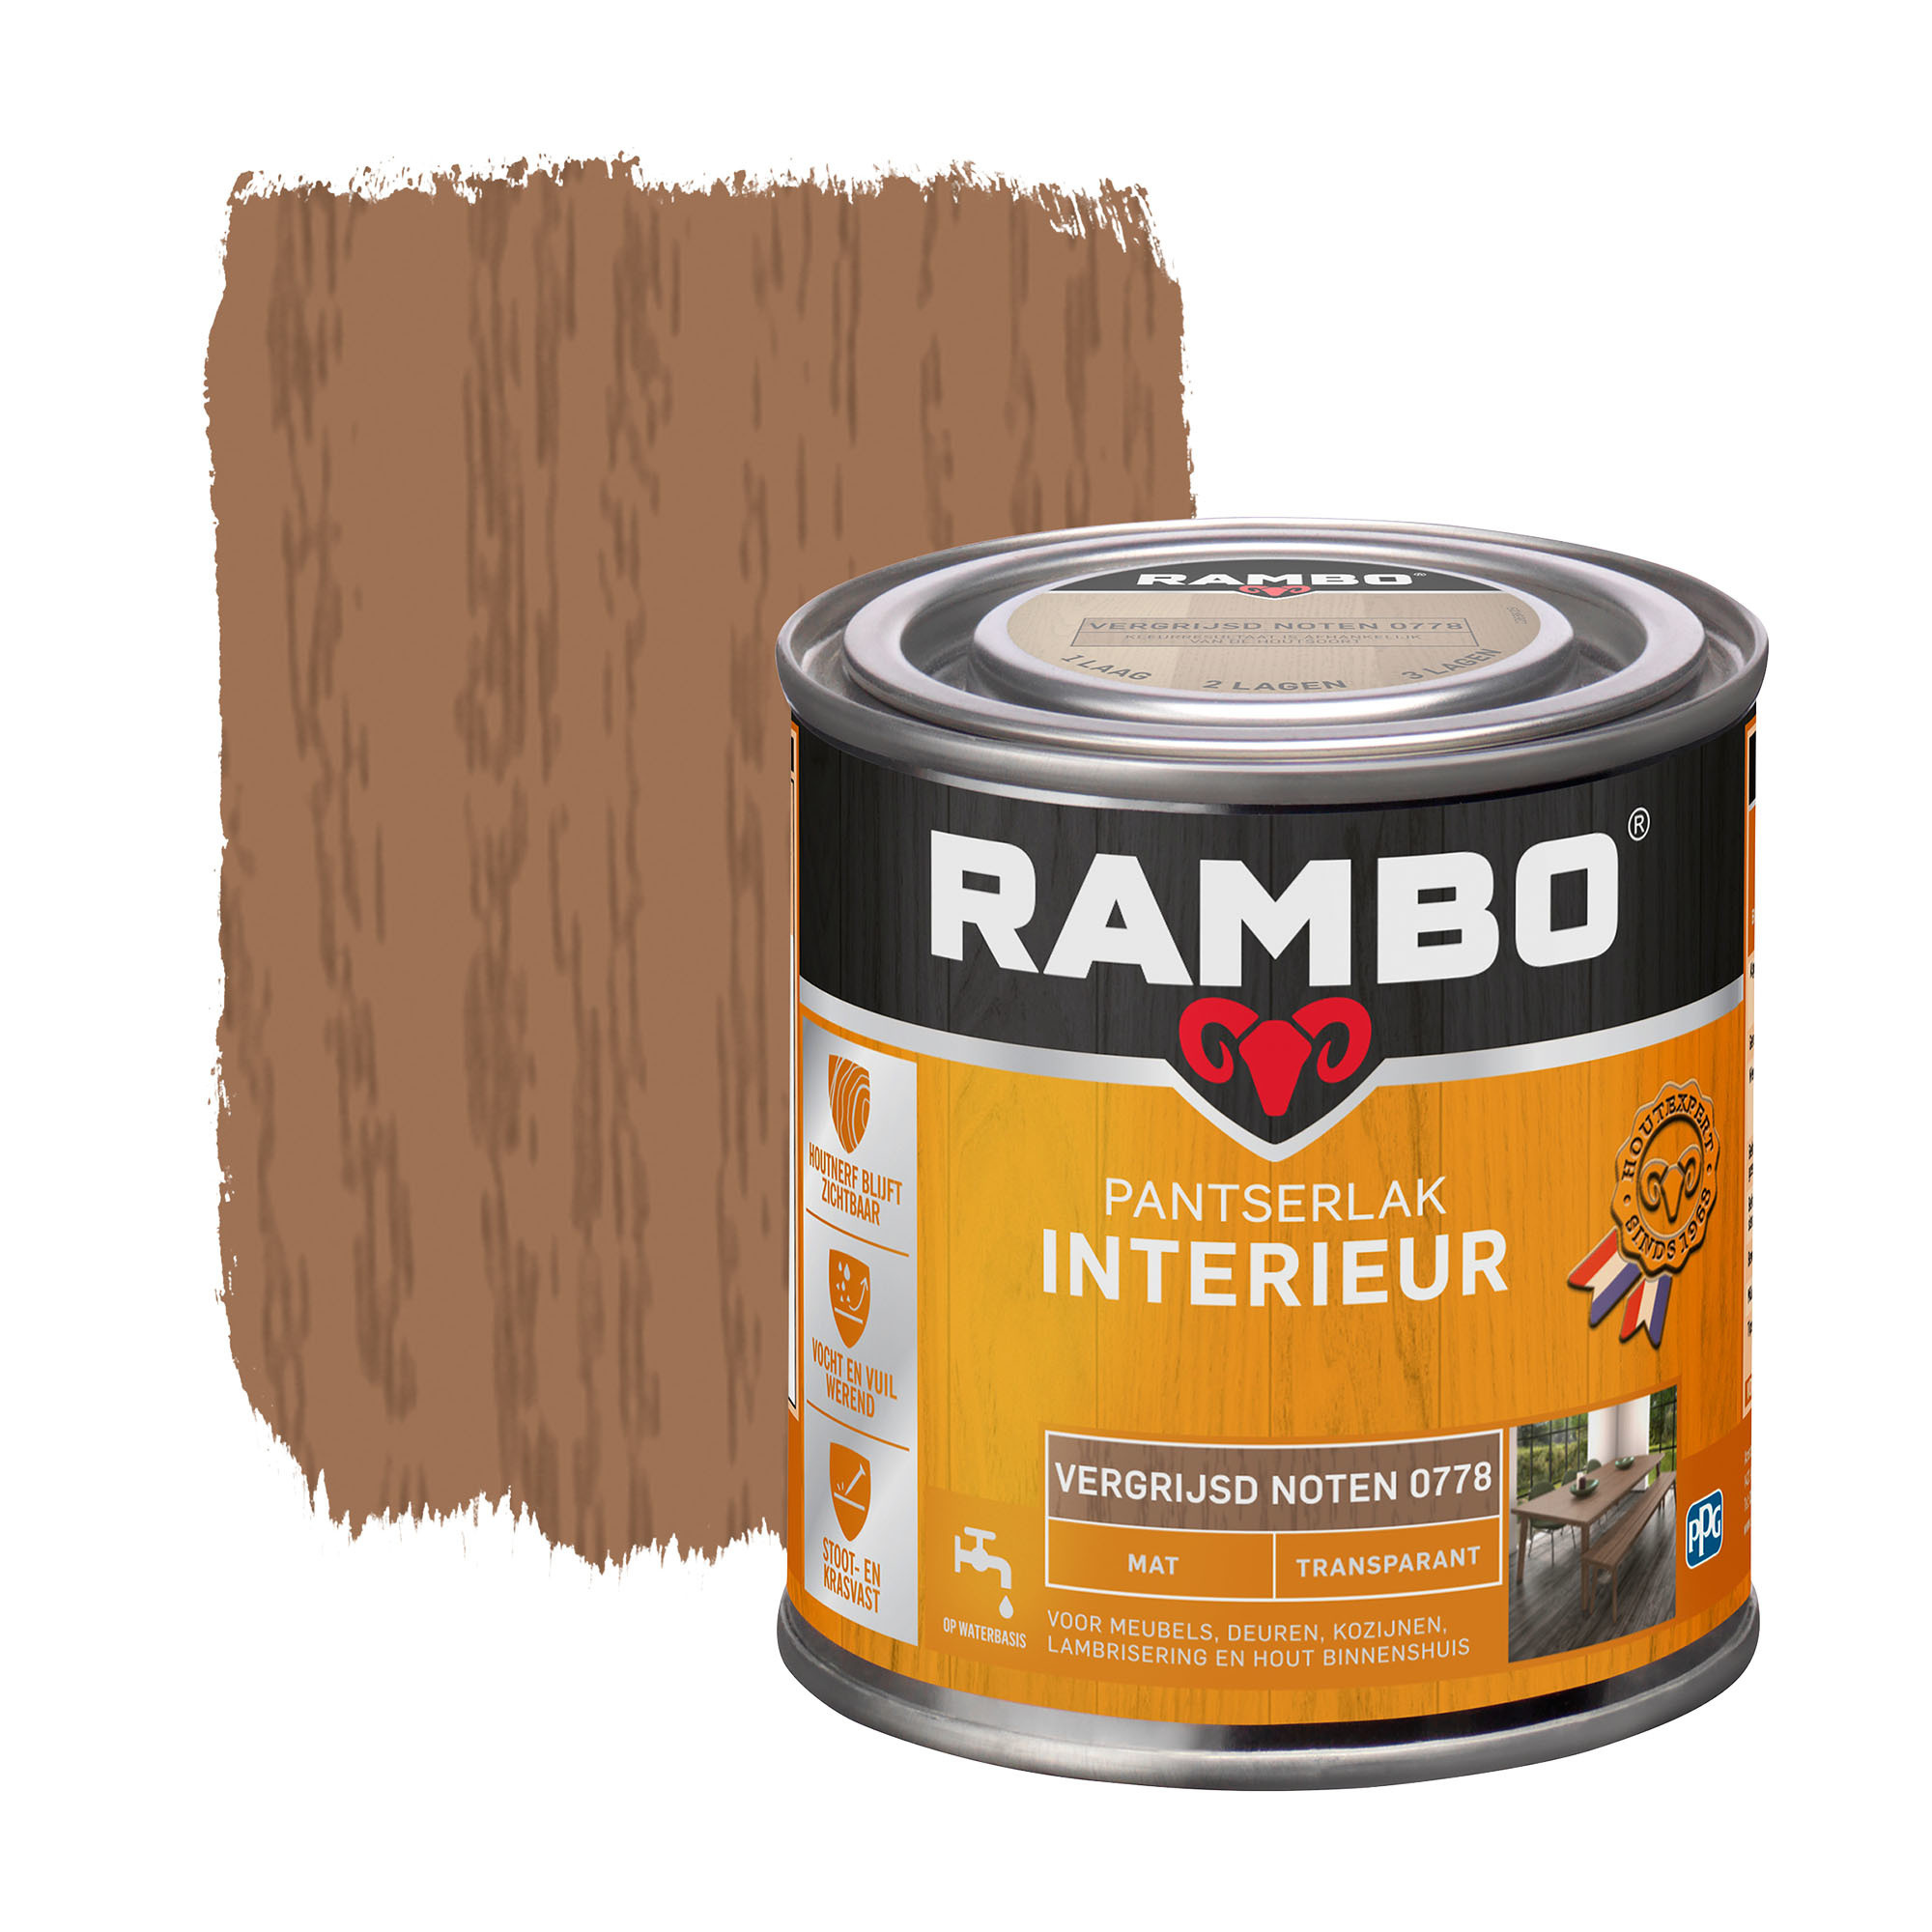 Rambo Pantserlak Interieur Transparant Mat - Vergrijsd noten